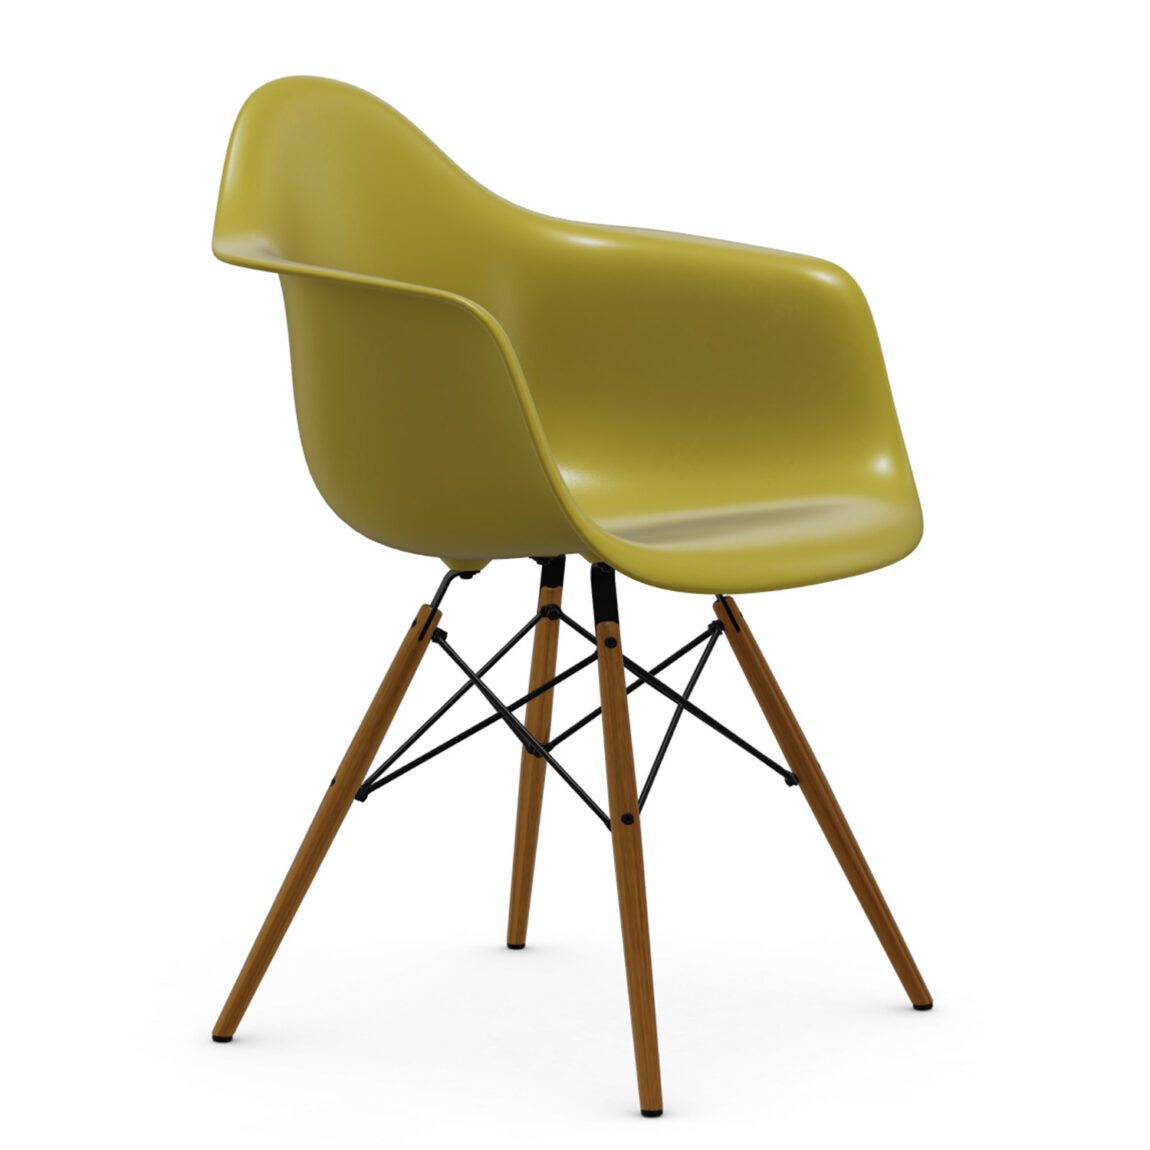 Výprodej Vitra designové židle DAW-skořepina hořčicová